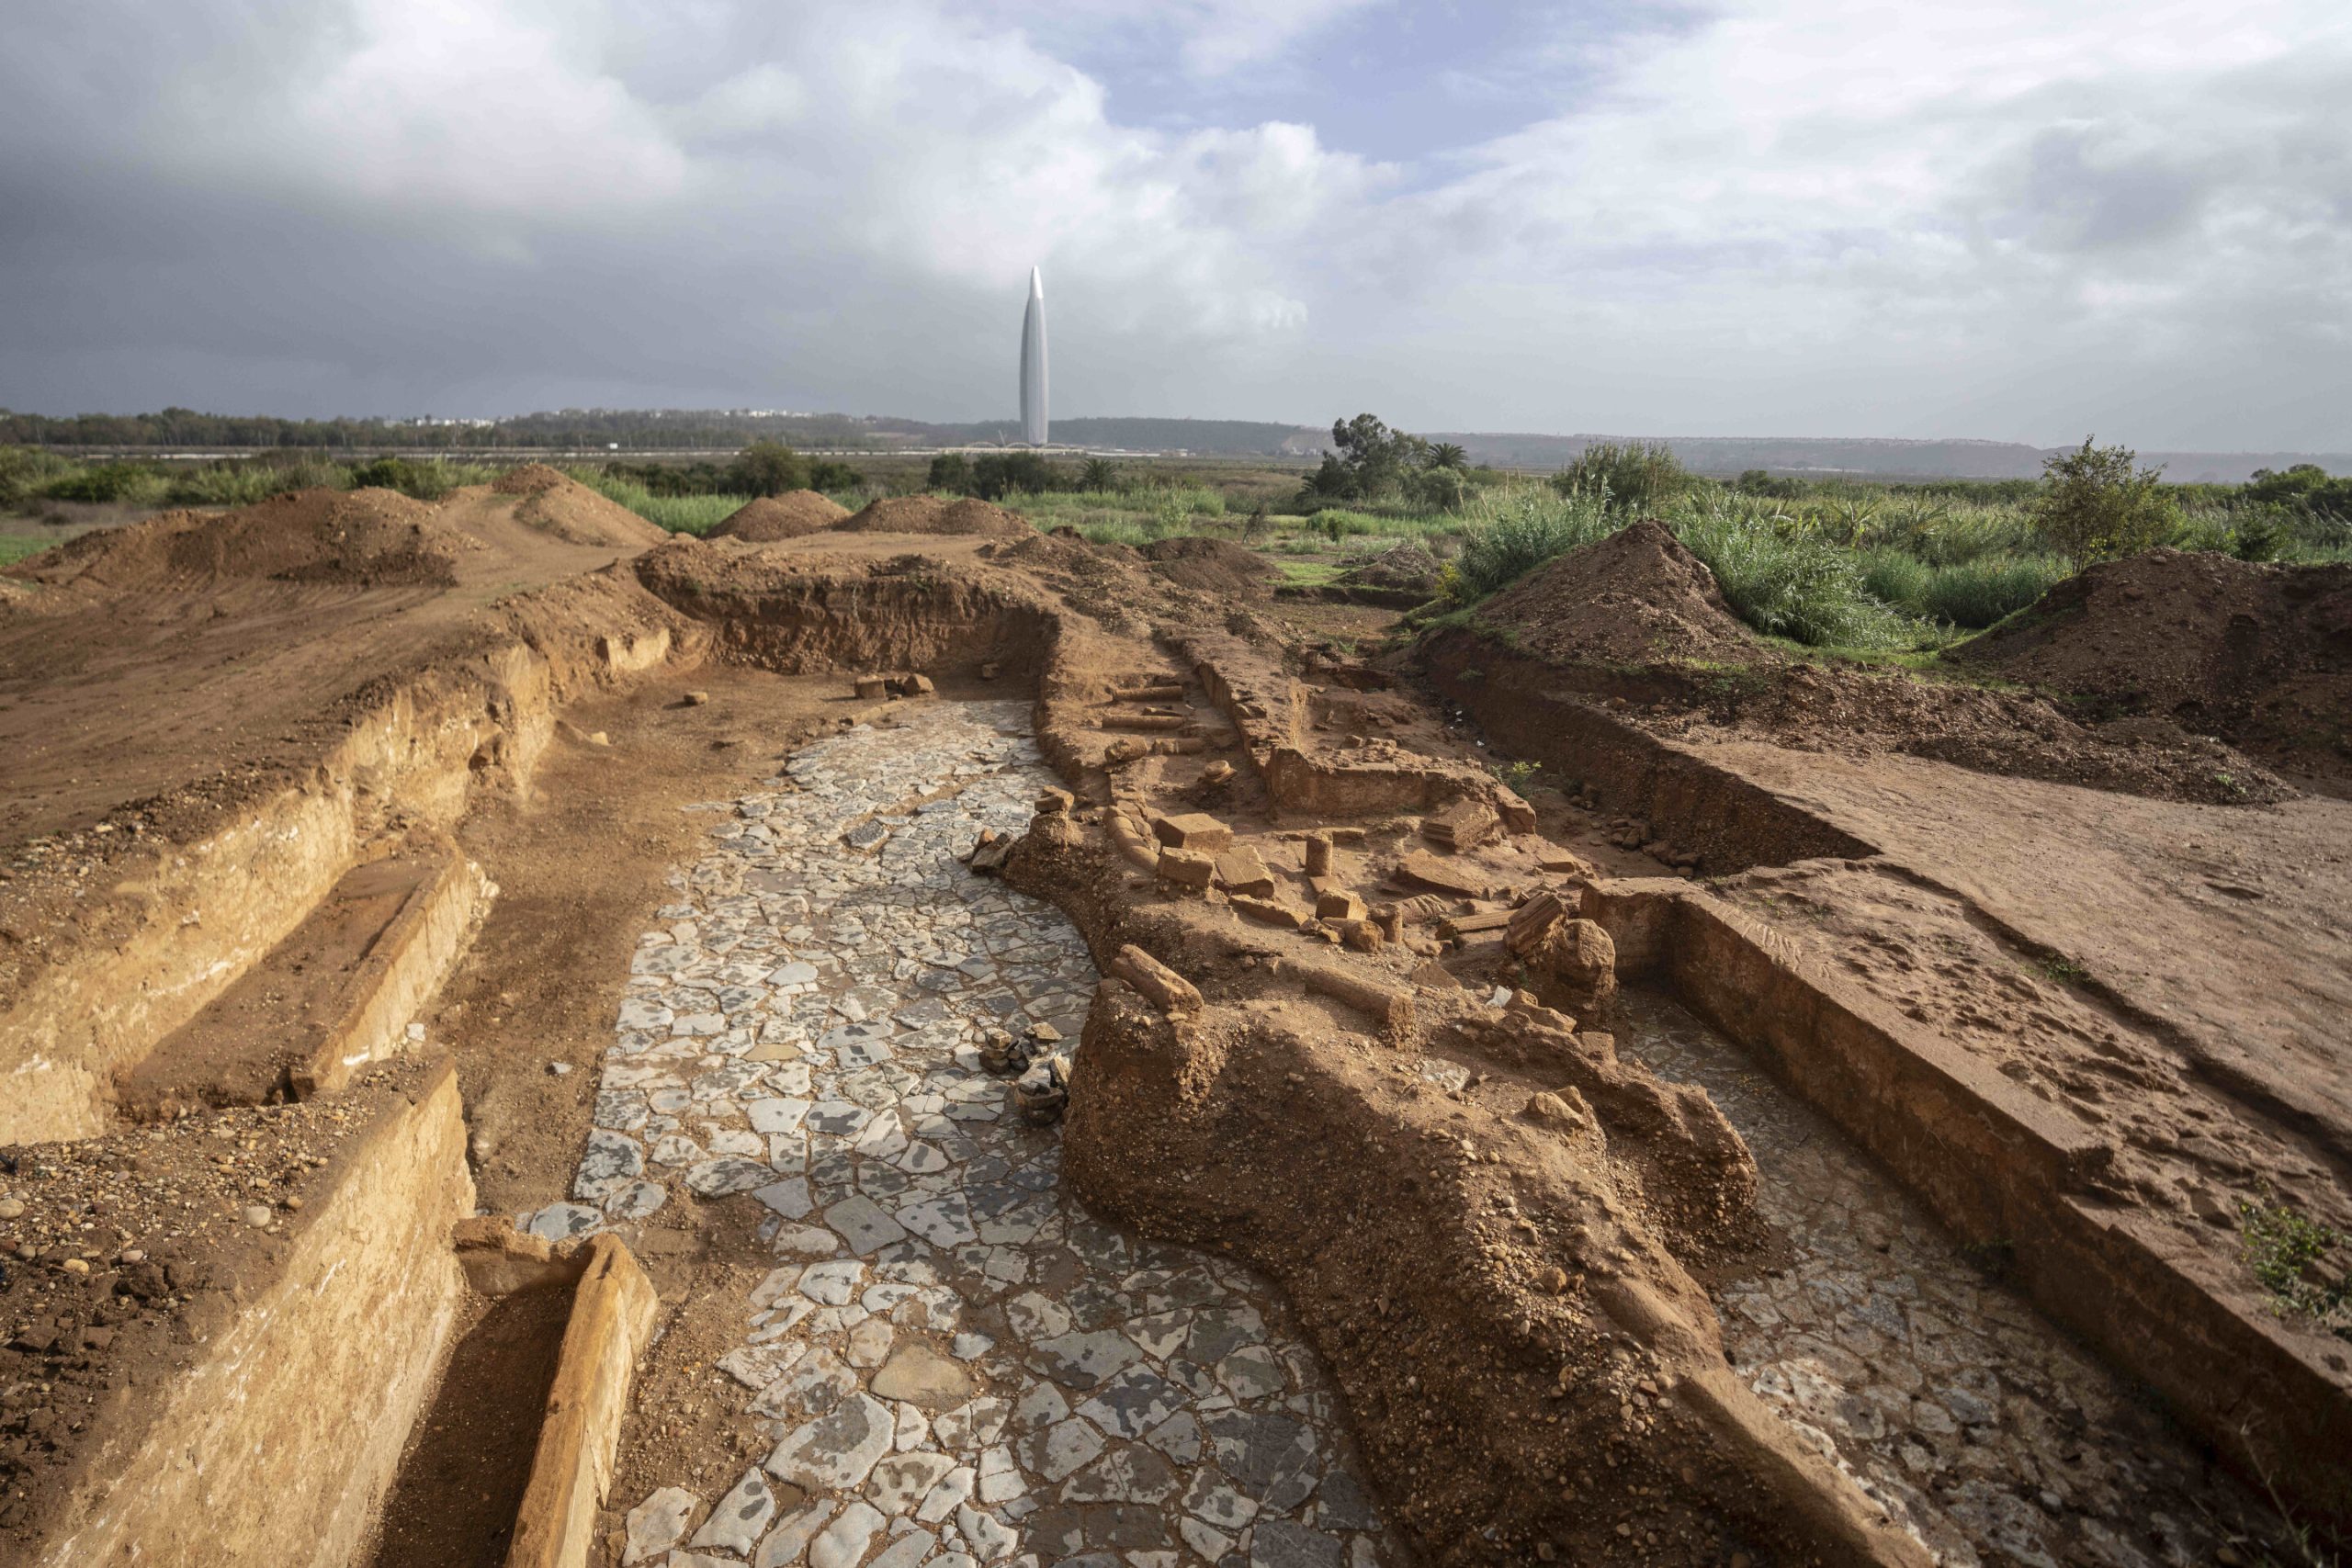 Otkriće drevne luke kraj Rabata - Novi pogled na bogato marokansko naslijeđe